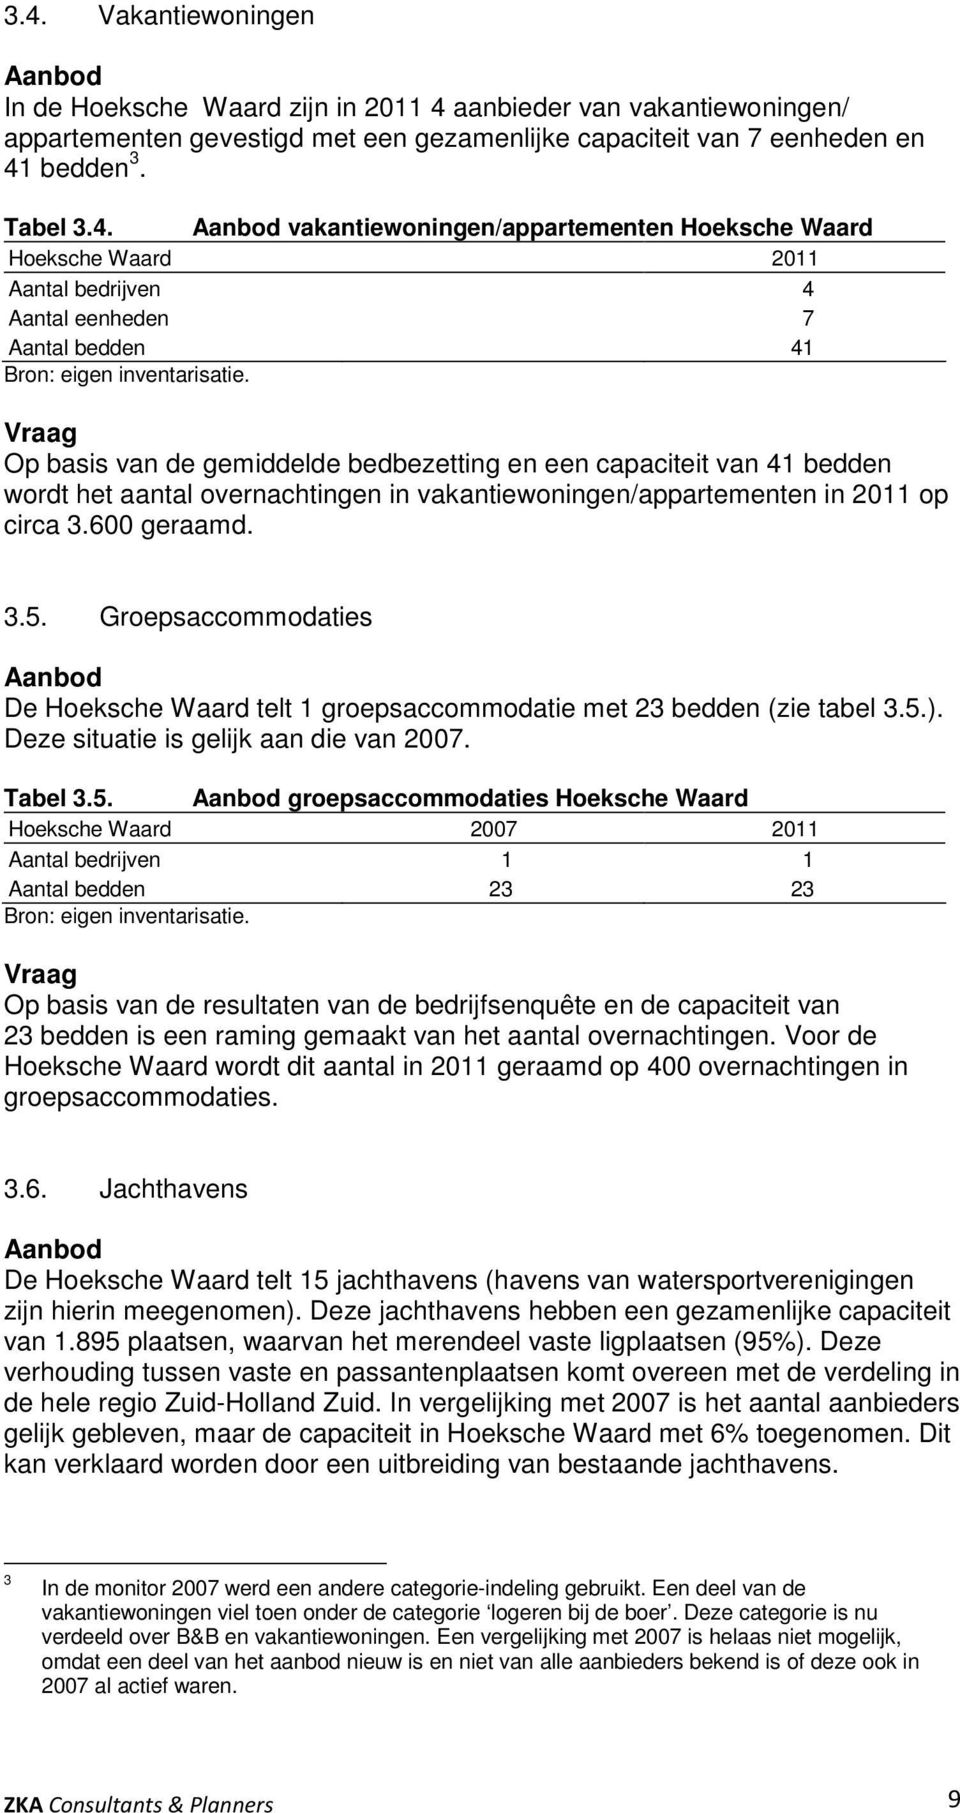 Groepsaccommodaties Aanbod De Hoeksche Waard telt 1 groepsaccommodatie met 23 bedden (zie tabel 3.5.